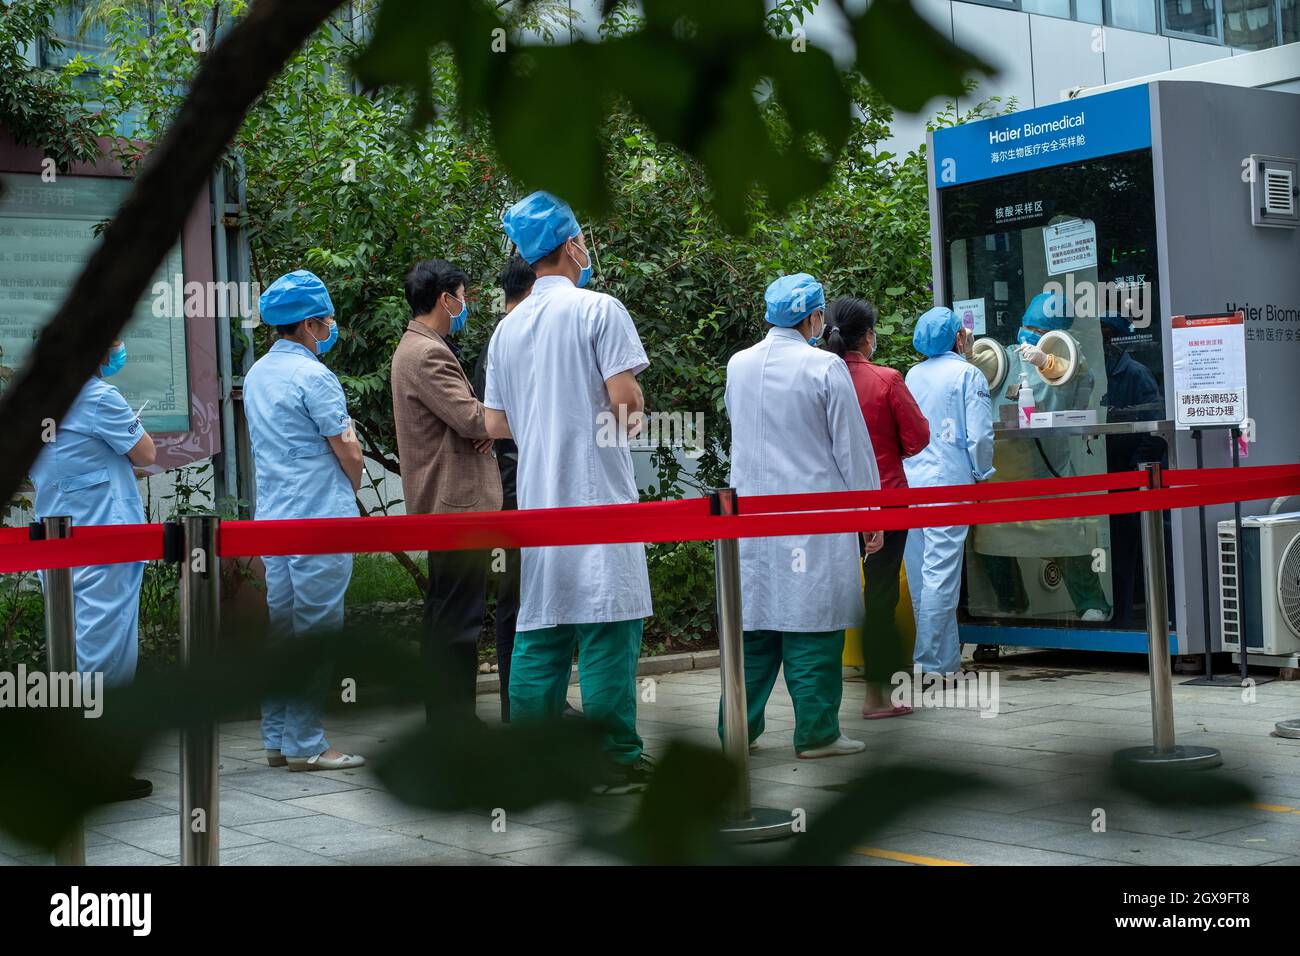 Le personnel médical chinois et les résidents ordinaires se trouvent dans un hôpital pour les tests d'acide nucléique Covid-19 à Beijing, en Chine. 05 octobre 2021 Banque D'Images